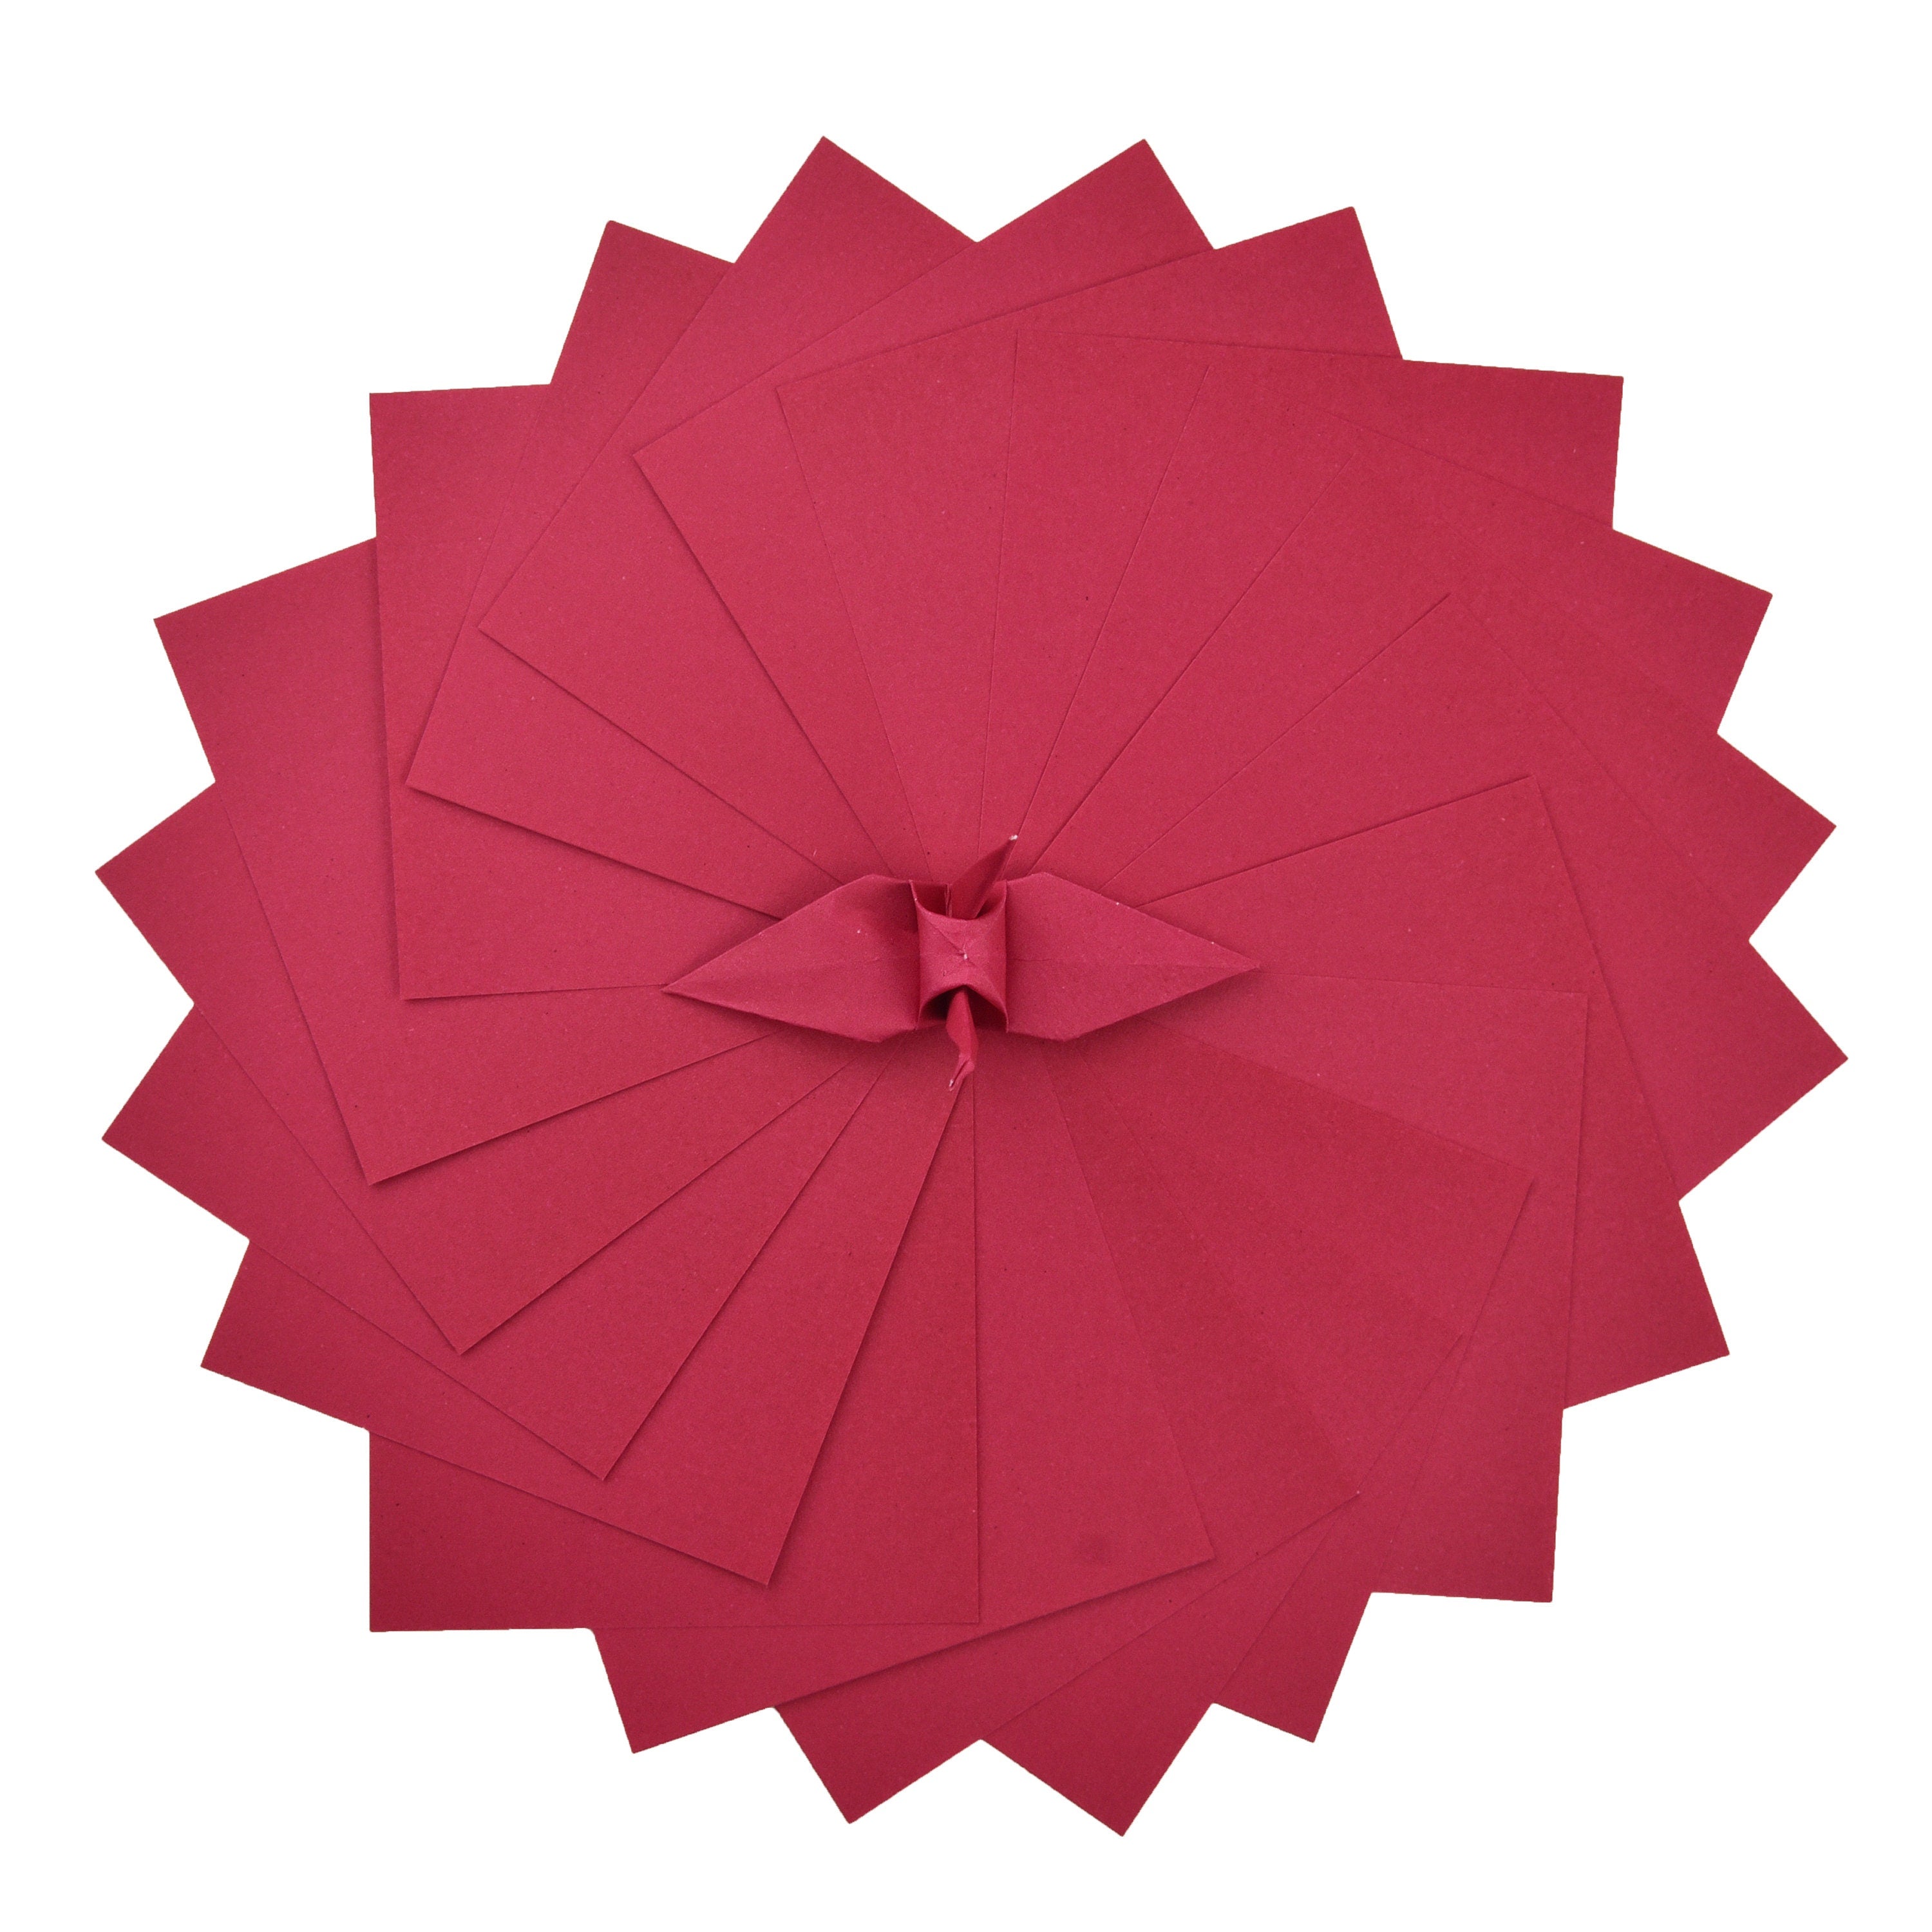 100 Hojas de Papel Origami - 6x6 pulgadas - Paquete de Papel Cuadrado para Plegar, Grullas de Origami y Decoración - S15